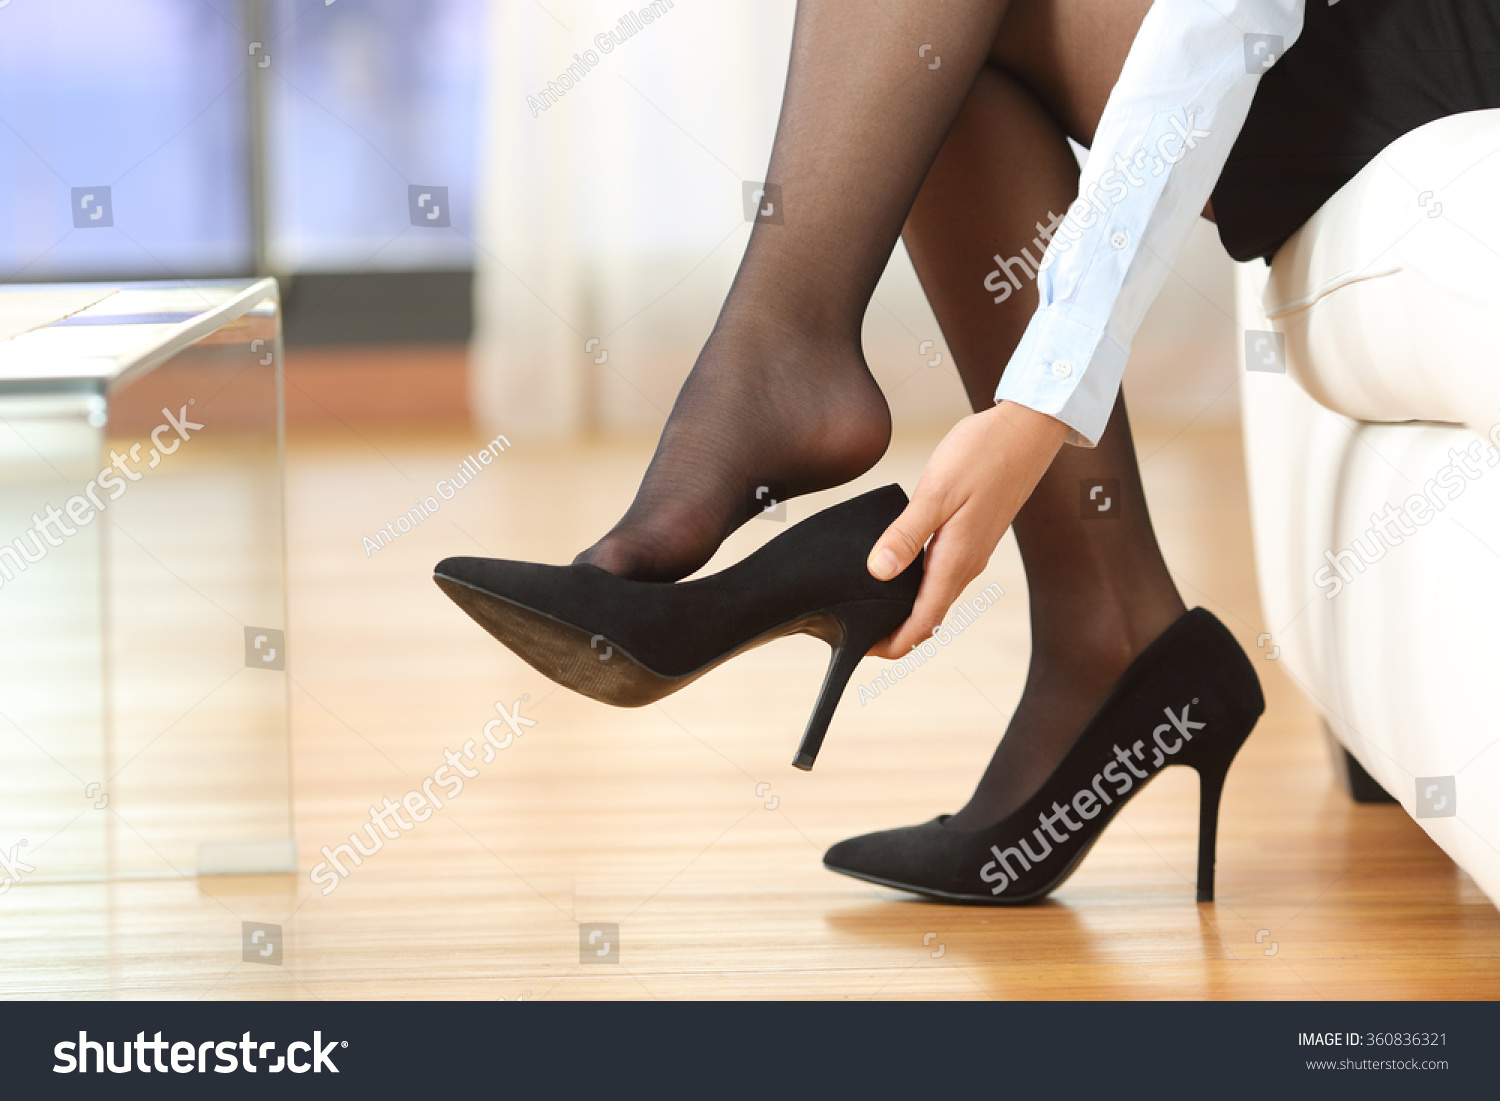 Woman Legs Stockings Taking 480 Ảnh Vector Và Hình Chụp Có Sẵn